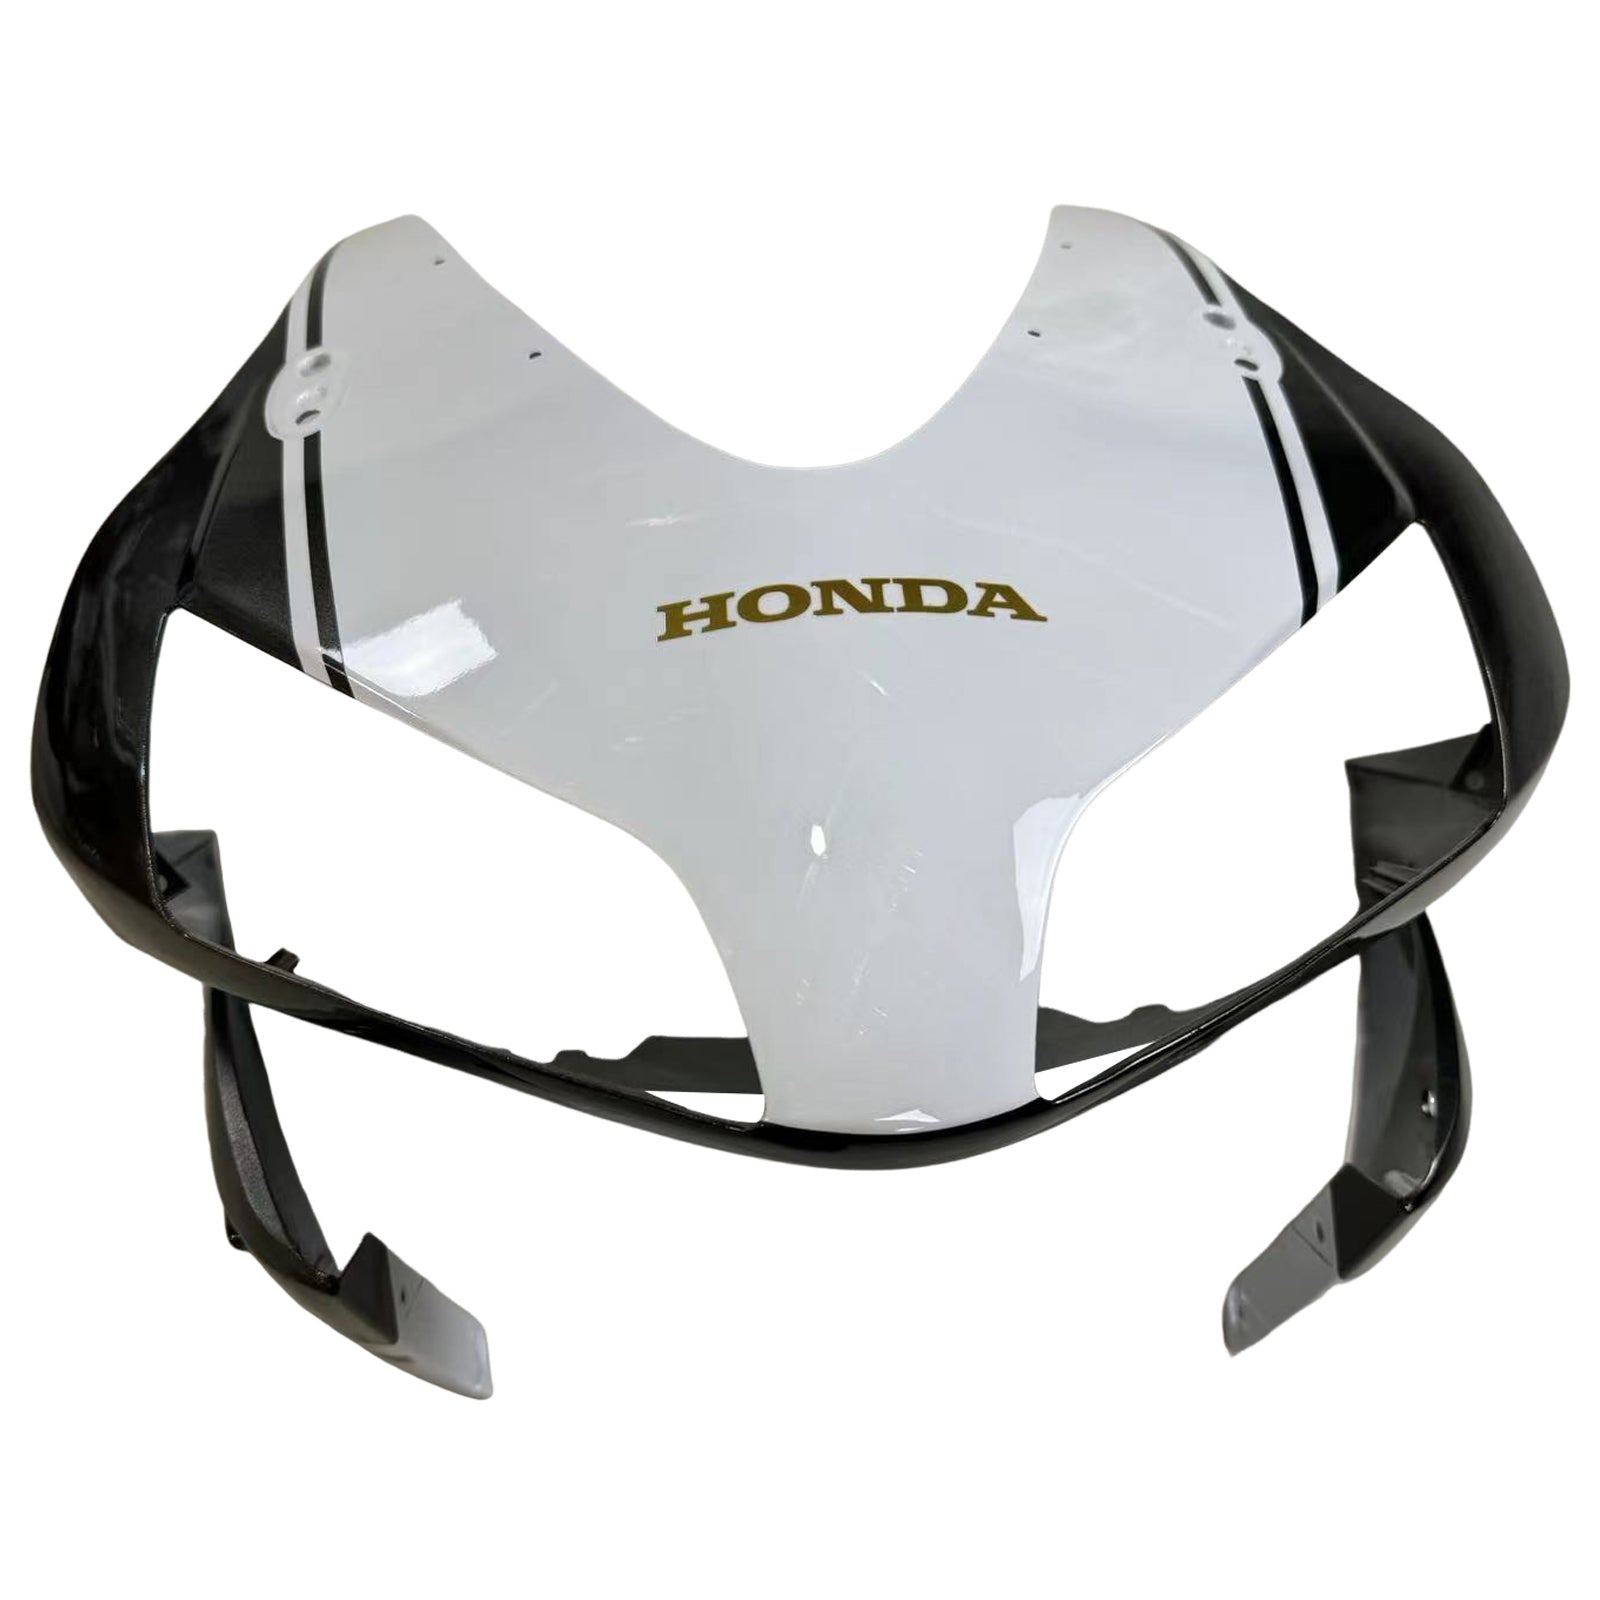 Amotopart 2003-2004 Honda CBR600RR Fairing Black&White Kit